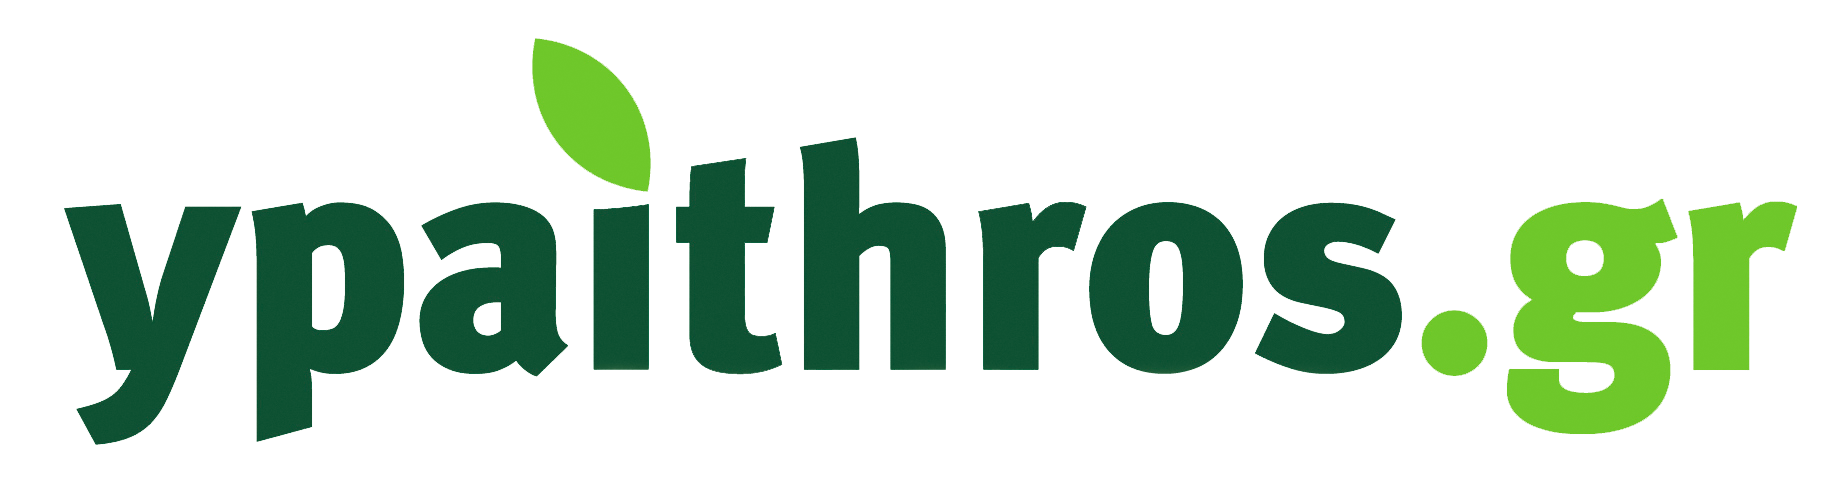 ypaithrosgr logo